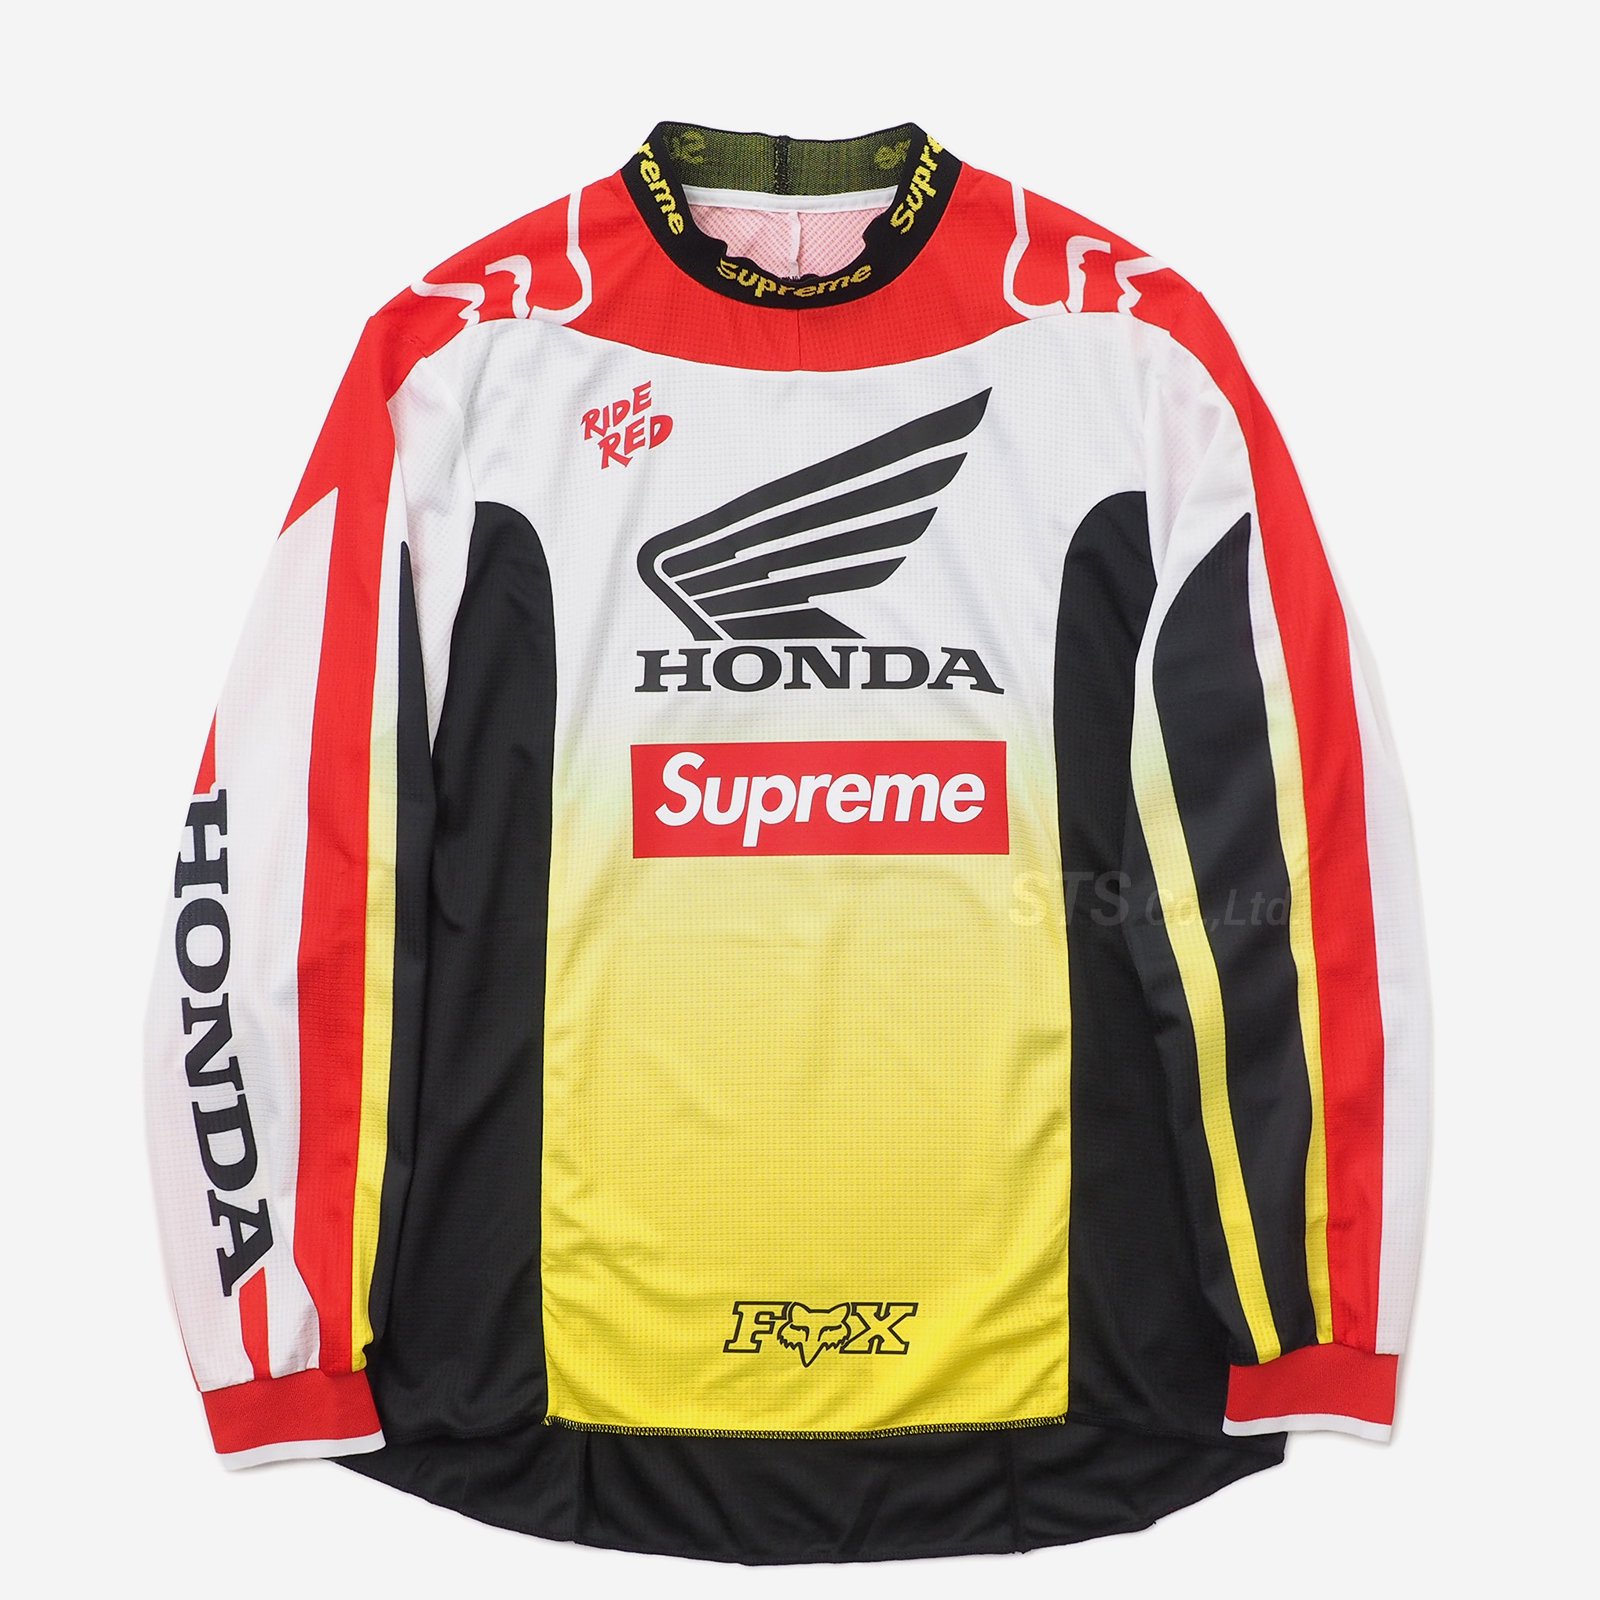 Supreme/Honda/Fox Racing Moto Jersey Top - UG.SHAFT